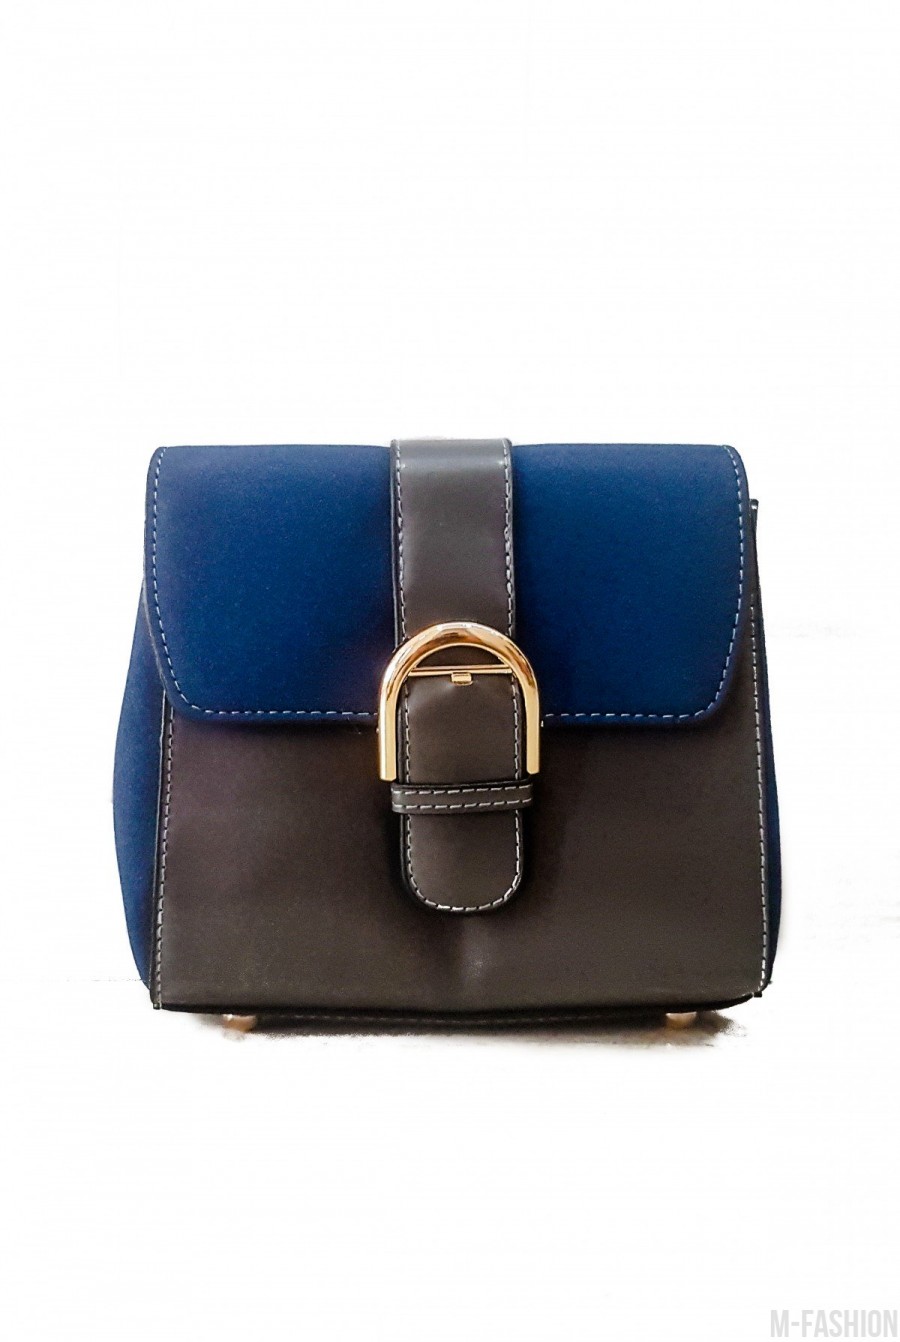 Синяя с серым лаконичная комбинированная женская сумочка - Фото 1